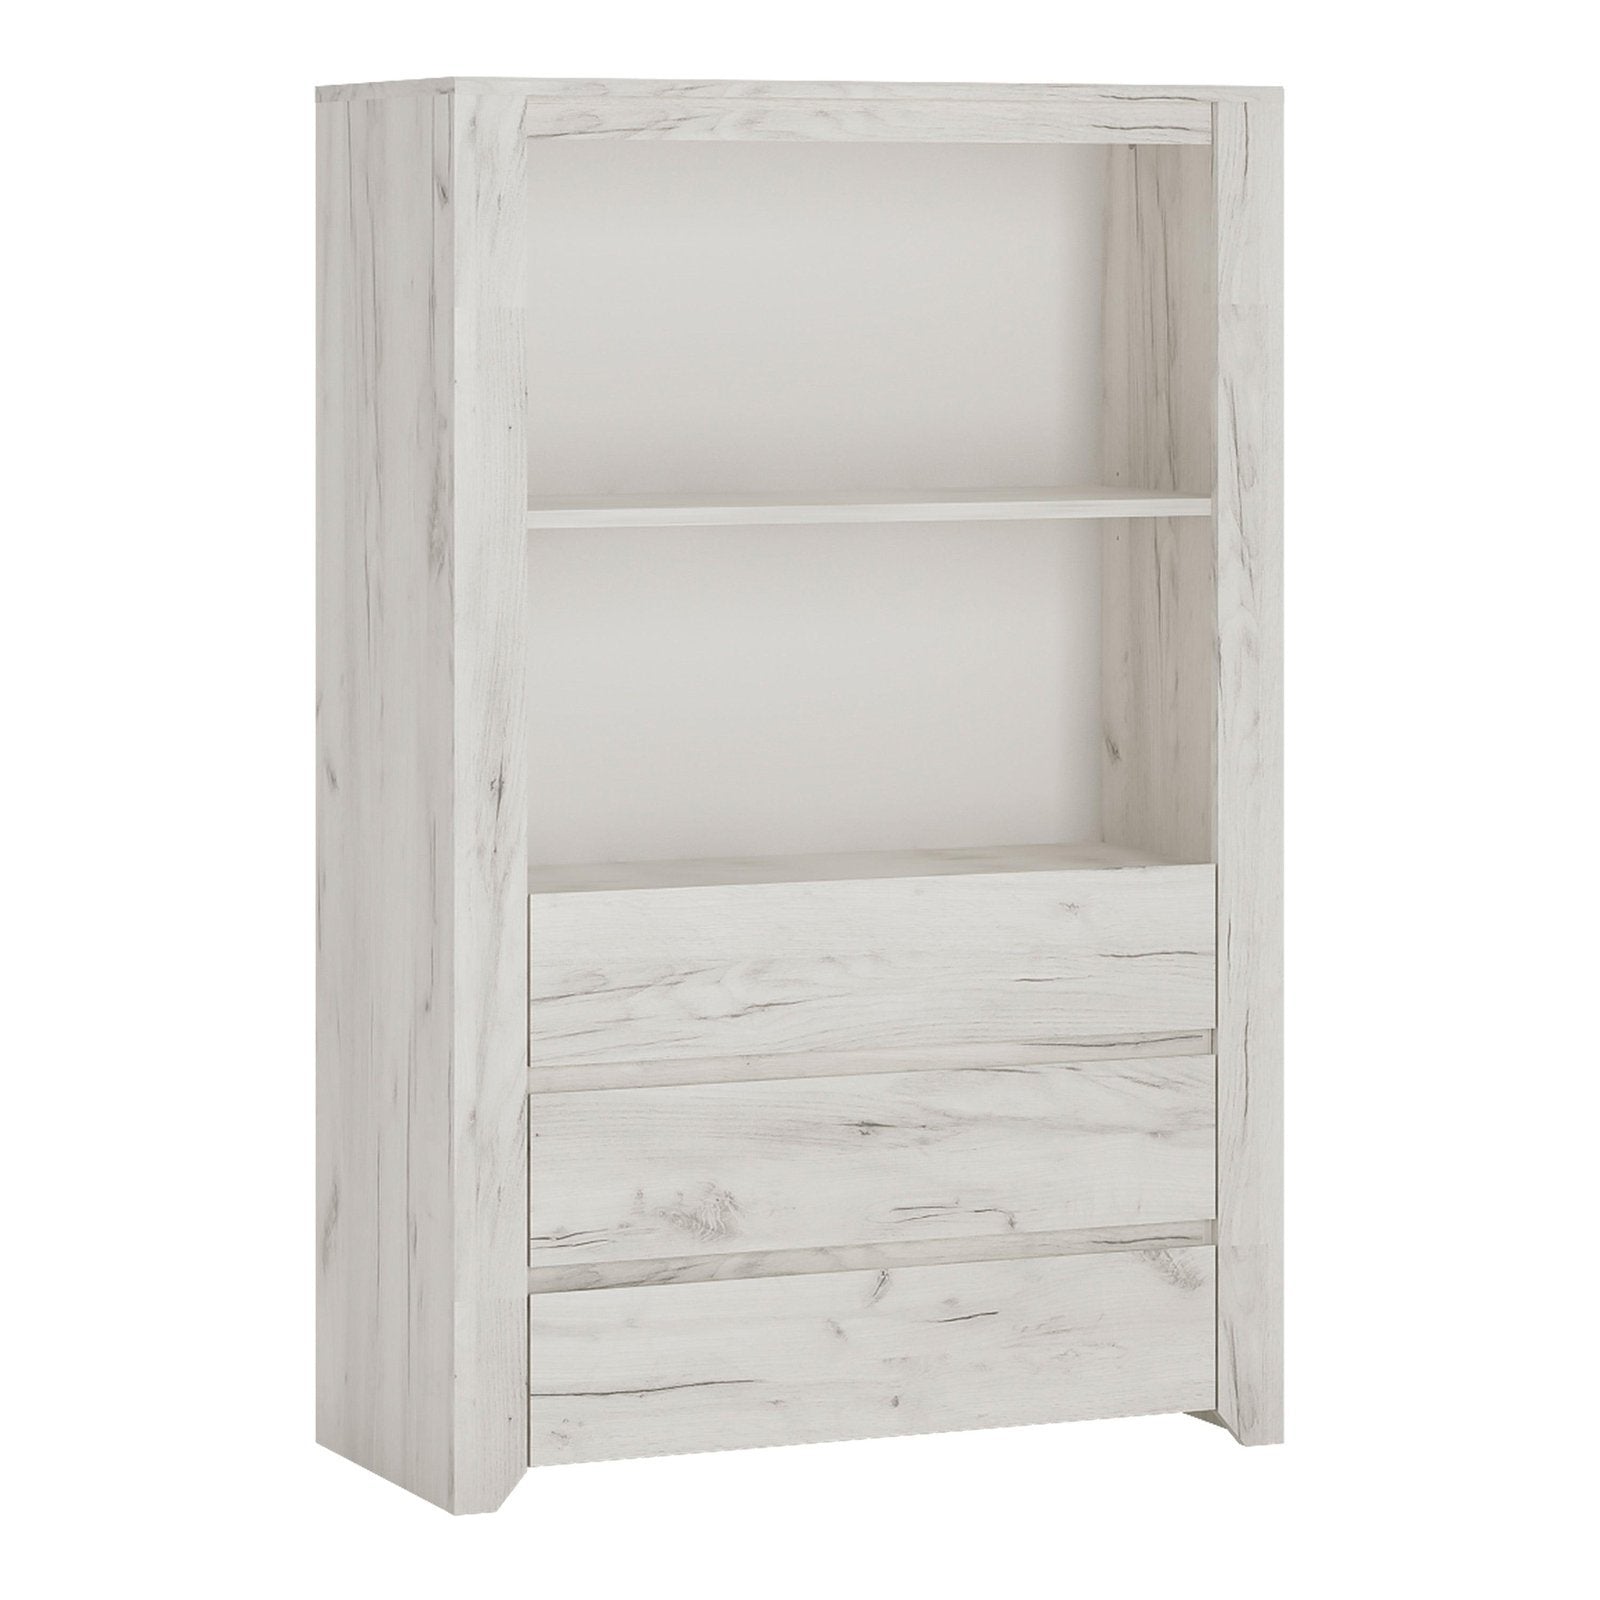 Angel 3 Drawer Cupboard with Open Shelf in White Craft Oak